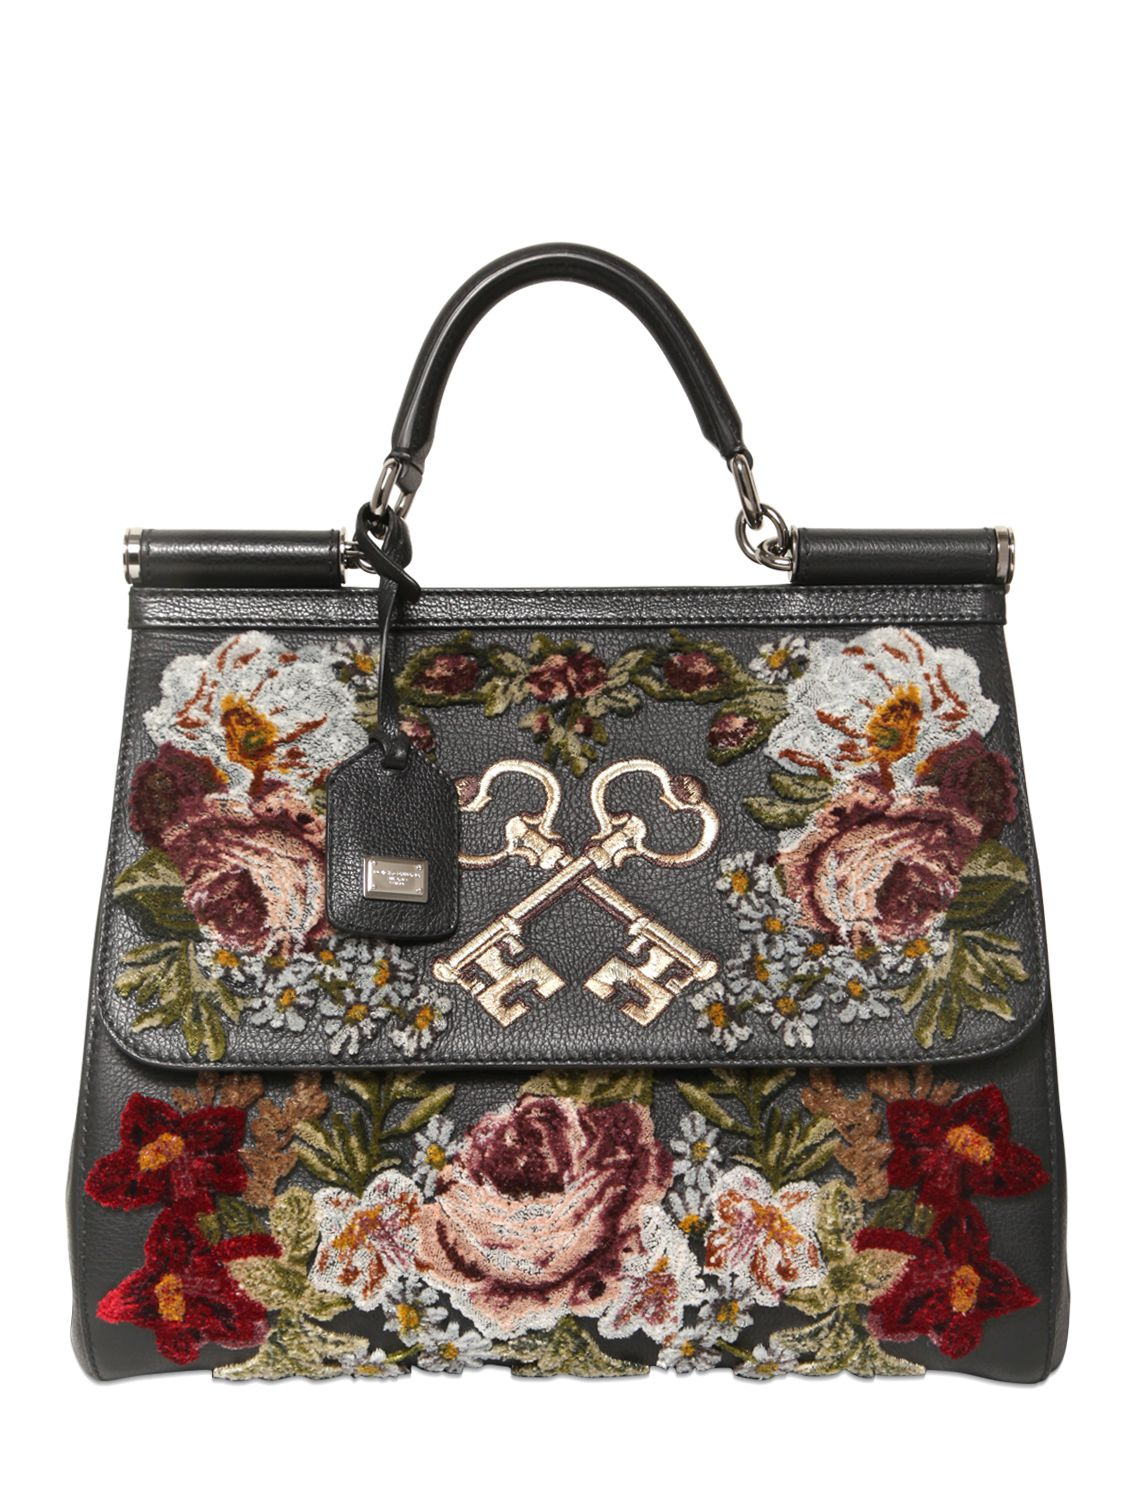 Lyst - Dolce & Gabbana Sicily Embroidered Velvet On Leather Bag in Black